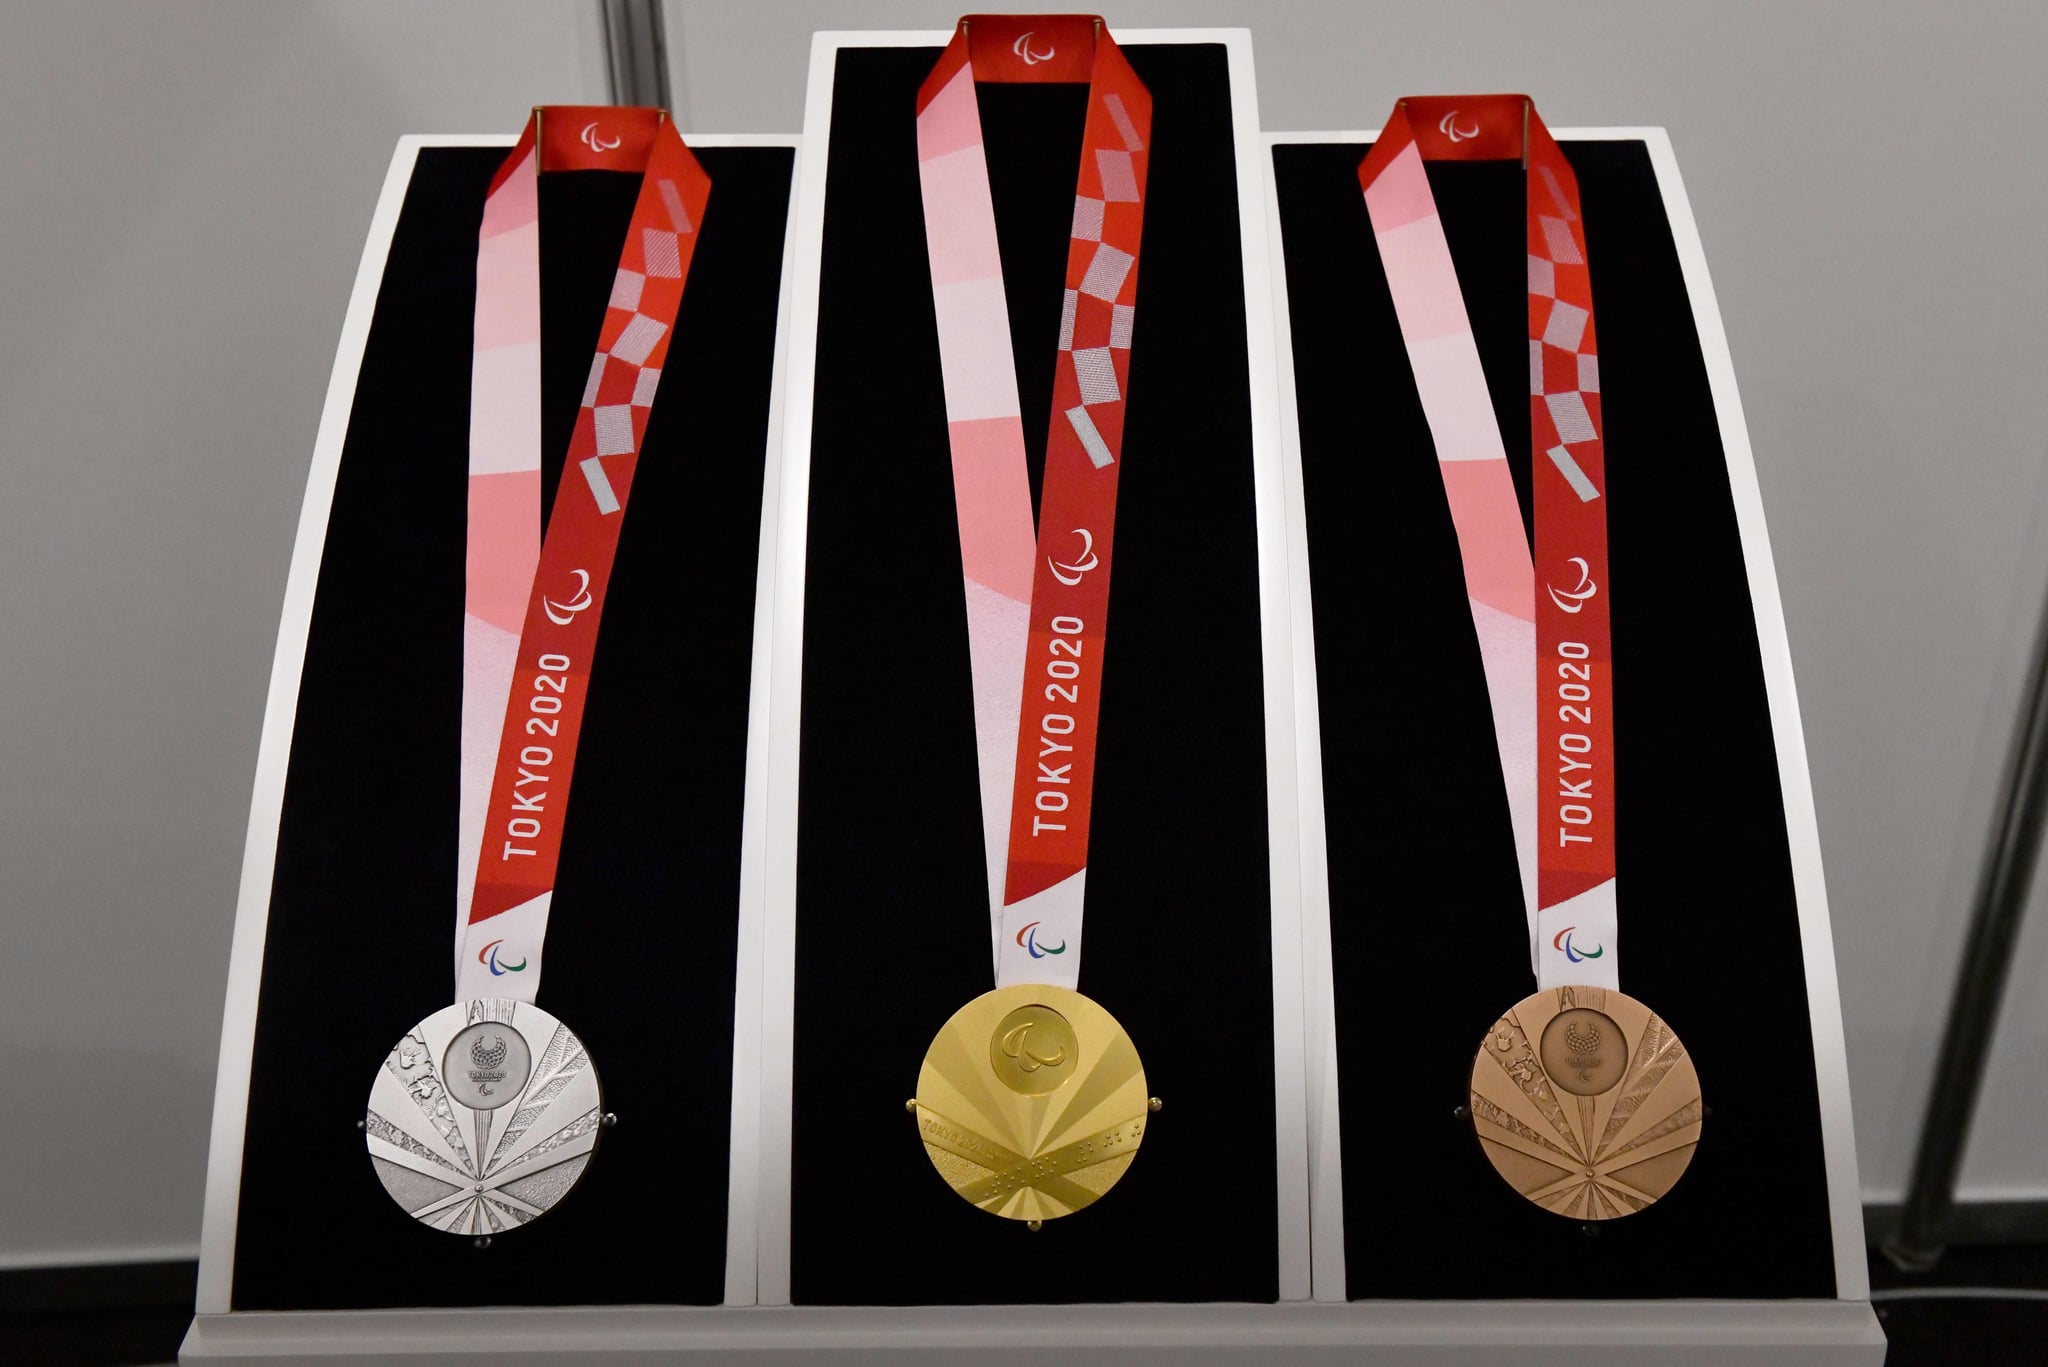 Paralympics 2020 medals